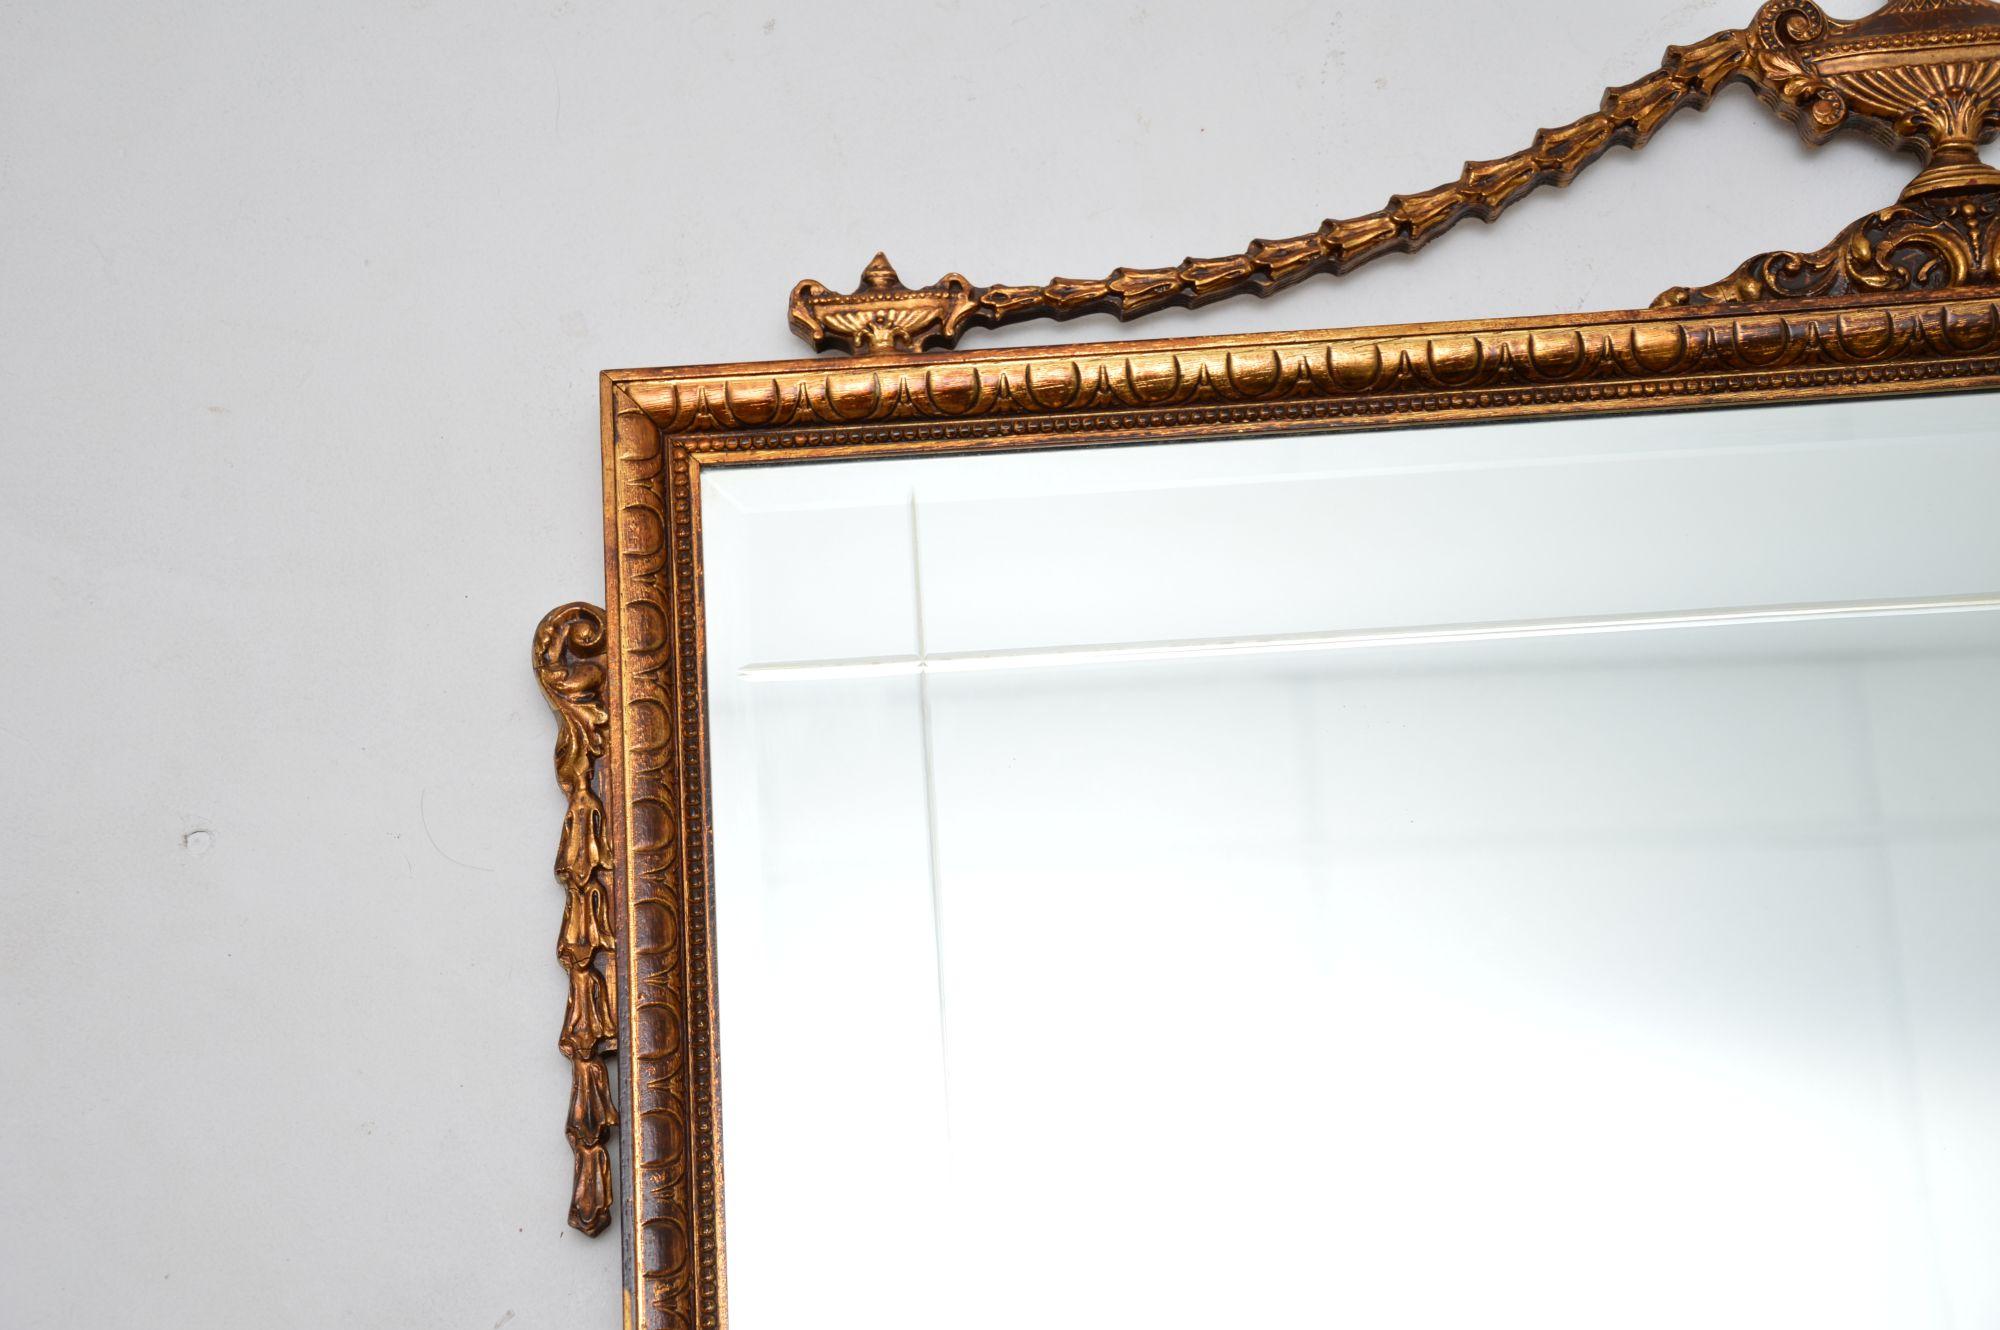 Ein sehr schöner antiker Spiegel aus vergoldetem Holz im Adams-Stil. Es wurde in England hergestellt und stammt etwa aus den 1950er Jahren.

Es ist von hervorragender Qualität und weist überall schöne Details auf. Das Glas ist geschliffen und mit